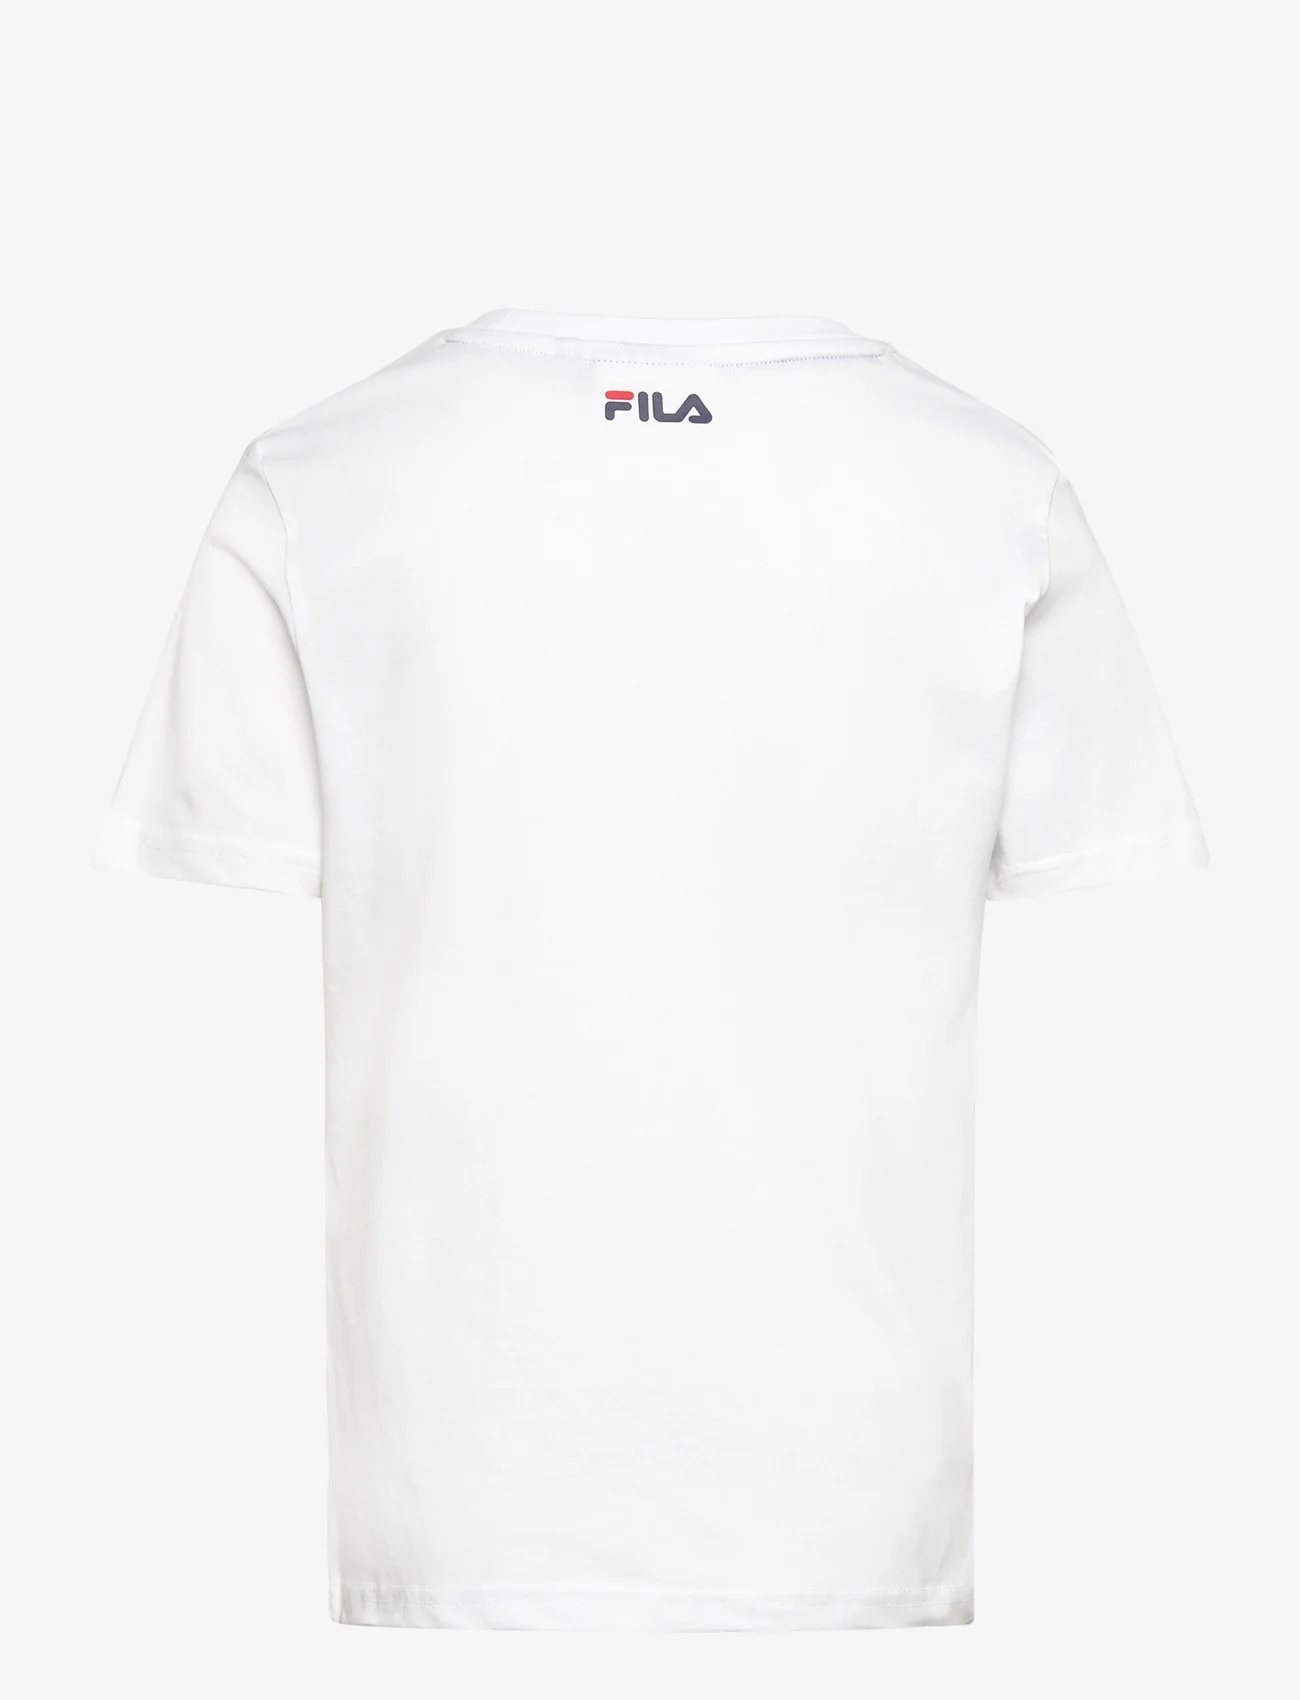 FILA - BAIA MARE classic logo tee - marškinėliai trumpomis rankovėmis - bright white - 1